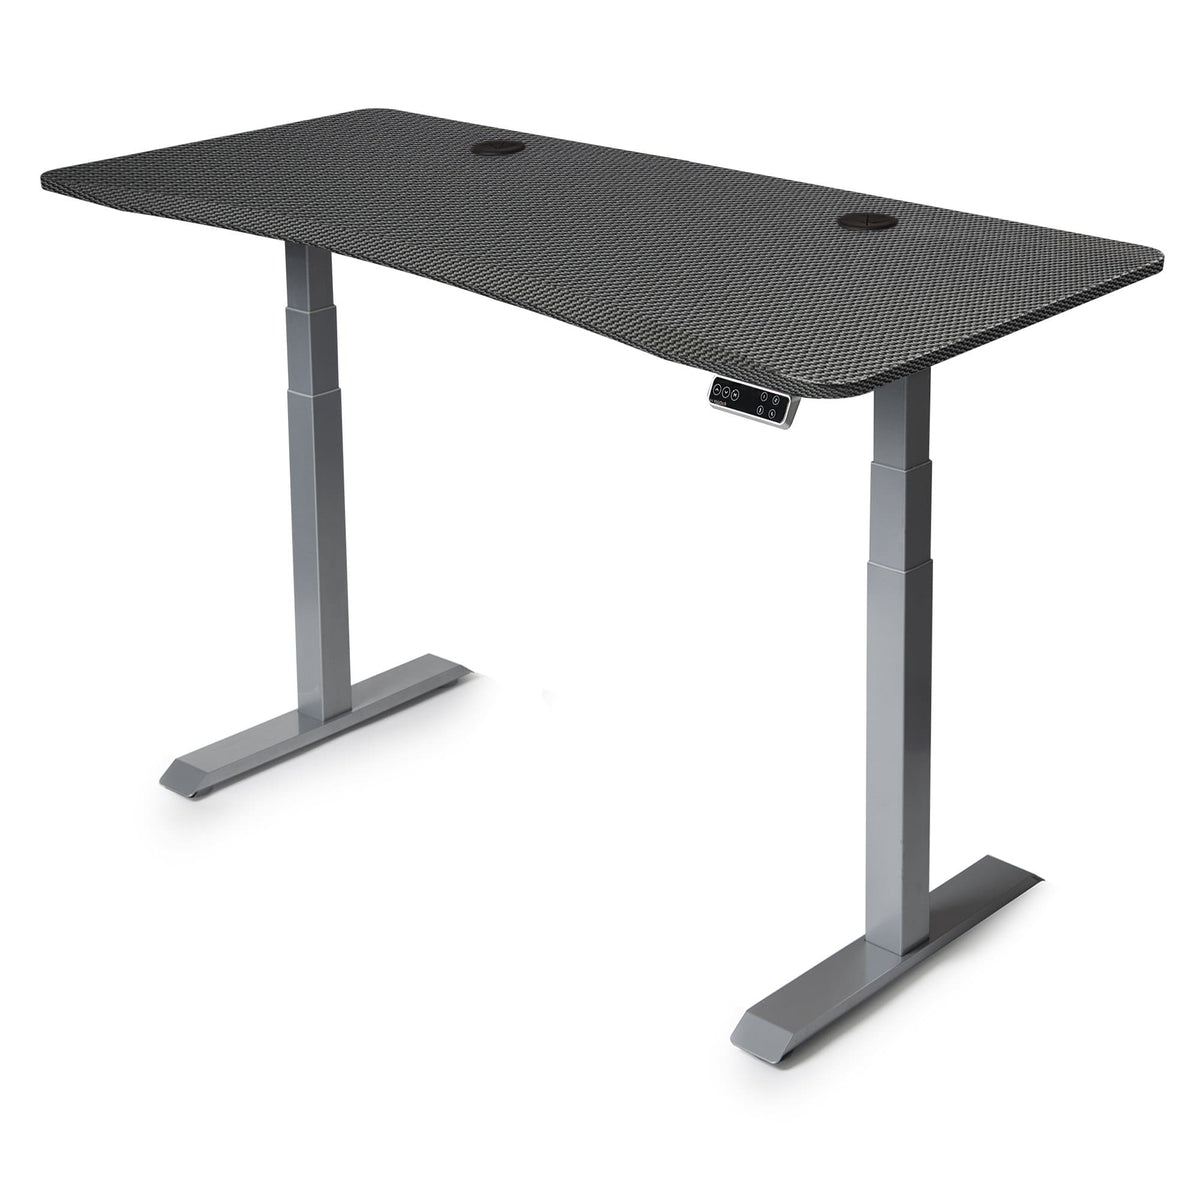 72x30 Height Adjustable Desk - Frame Color: Gray - Desktop Color: Carbon Fiber